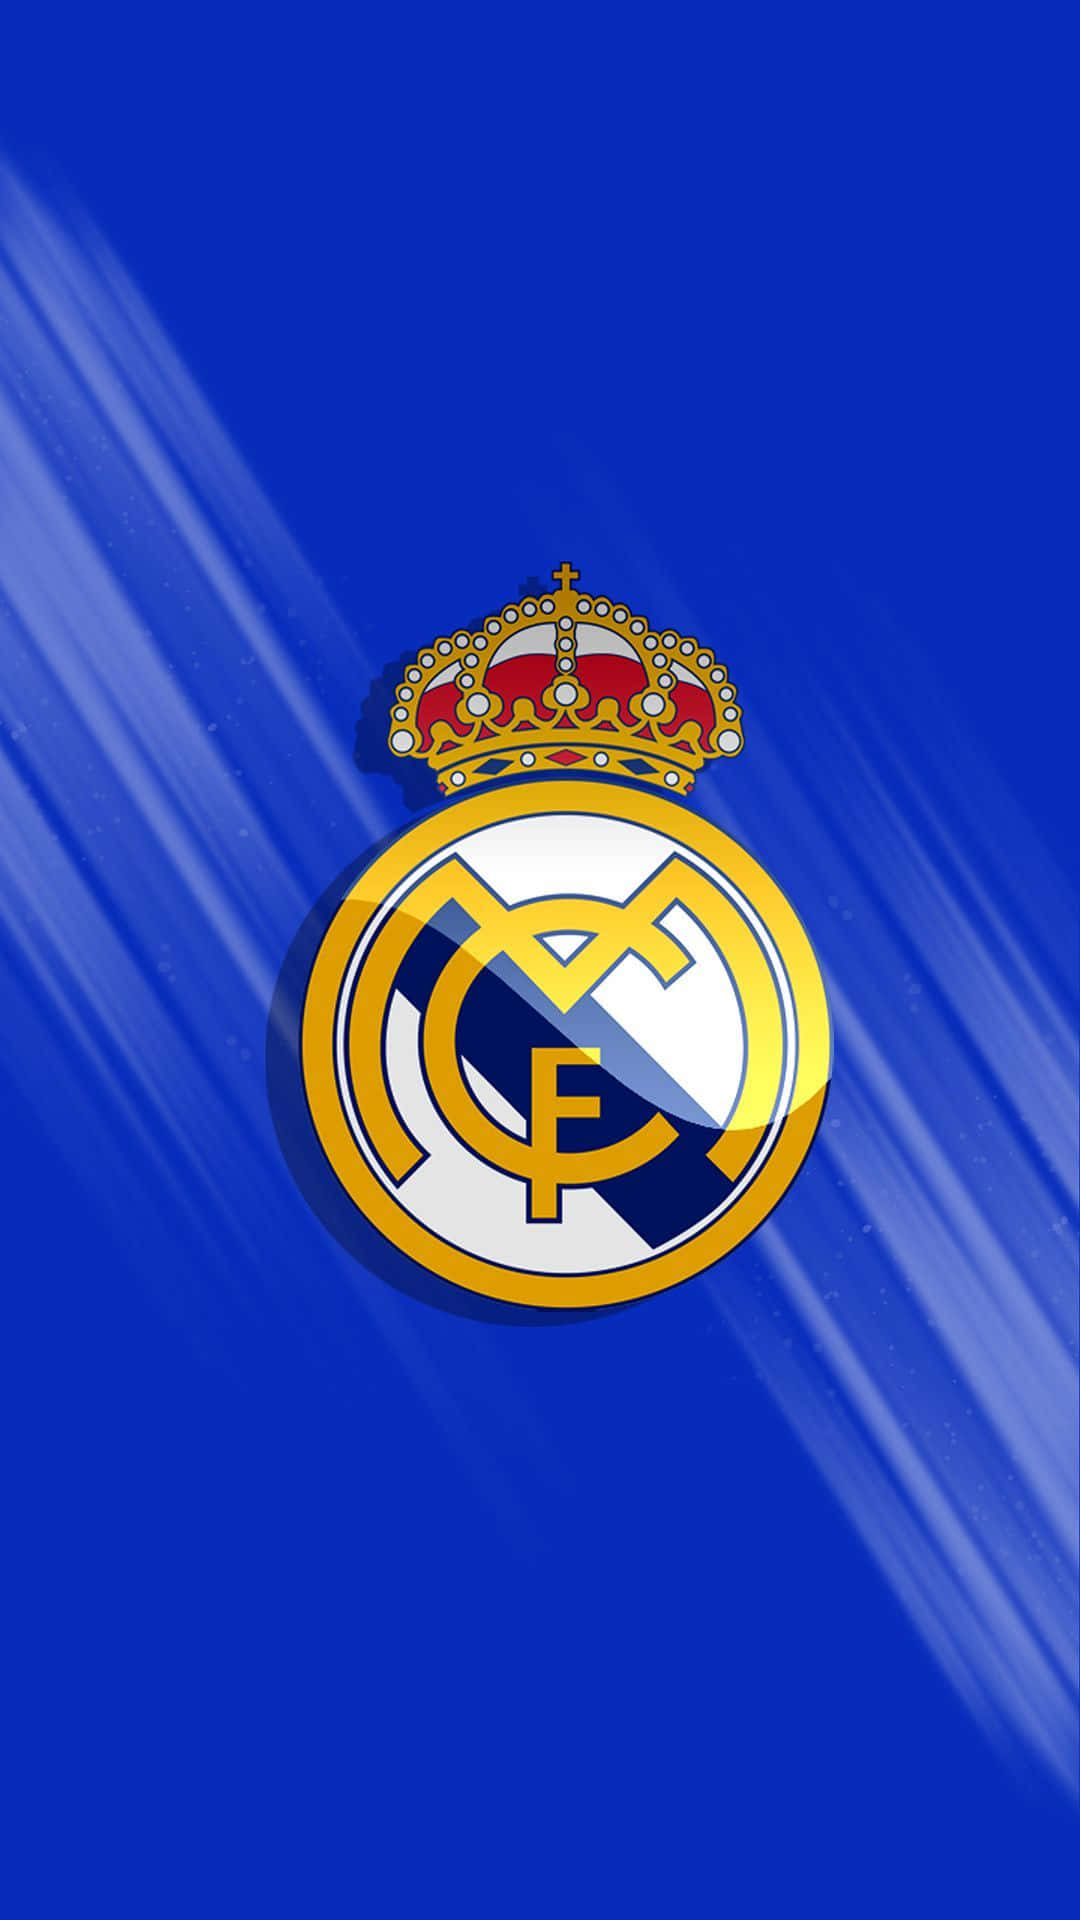 Real Madrid: Leaders in Football